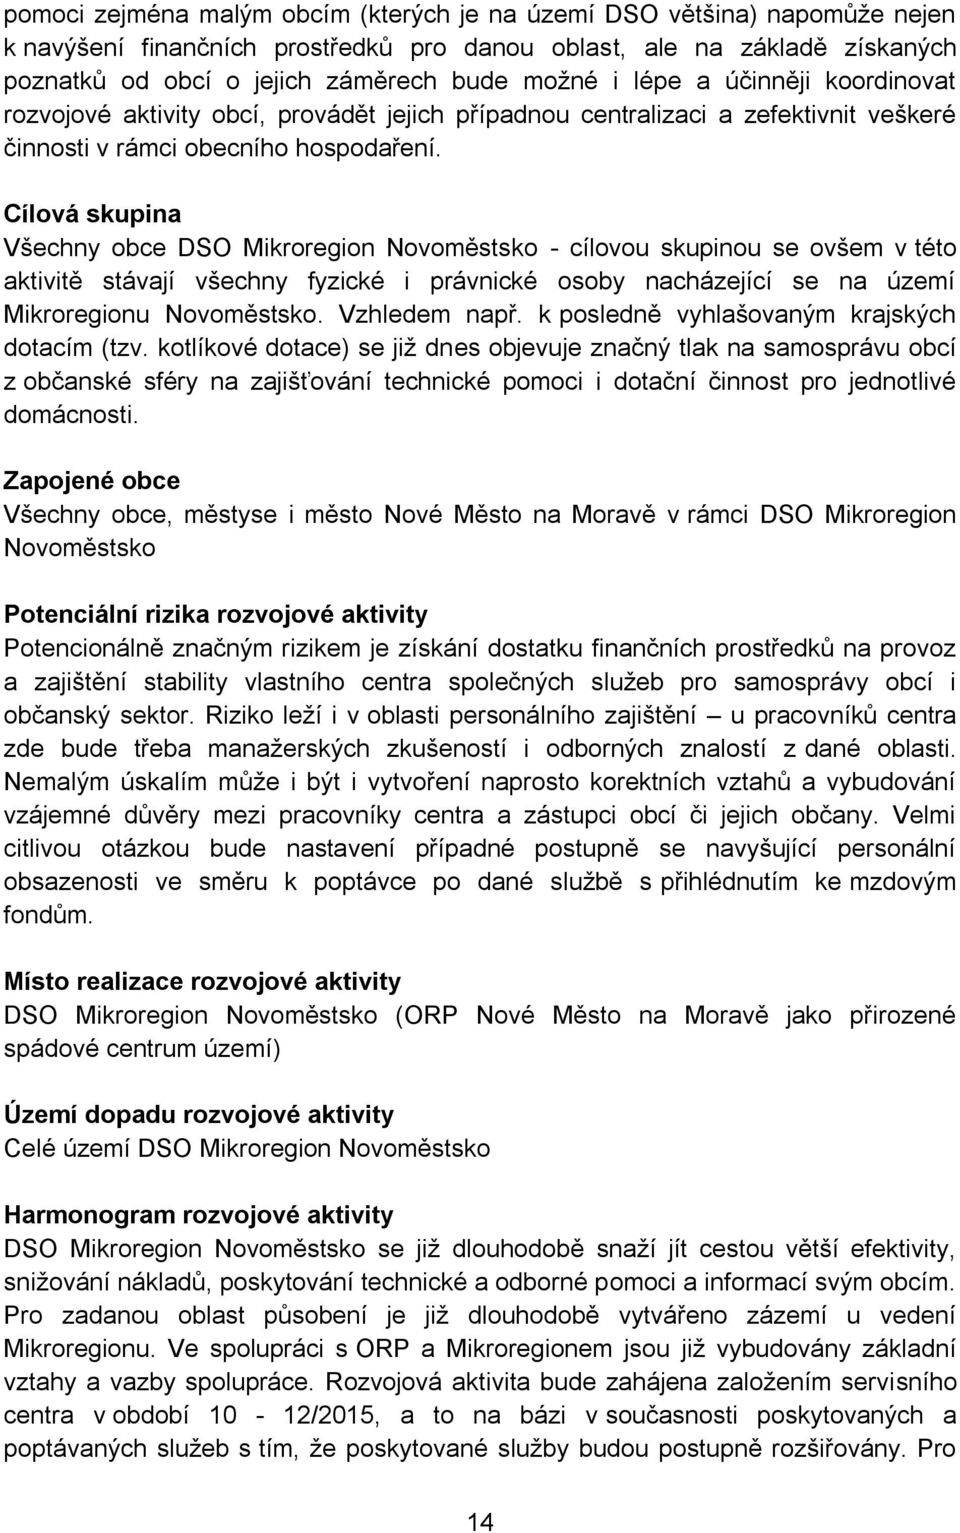 Cílová skupina Všechny obce DSO Mikroregion Novoměstsko - cílovou skupinou se ovšem v této aktivitě stávají všechny fyzické i právnické osoby nacházející se na území Mikroregionu Novoměstsko.